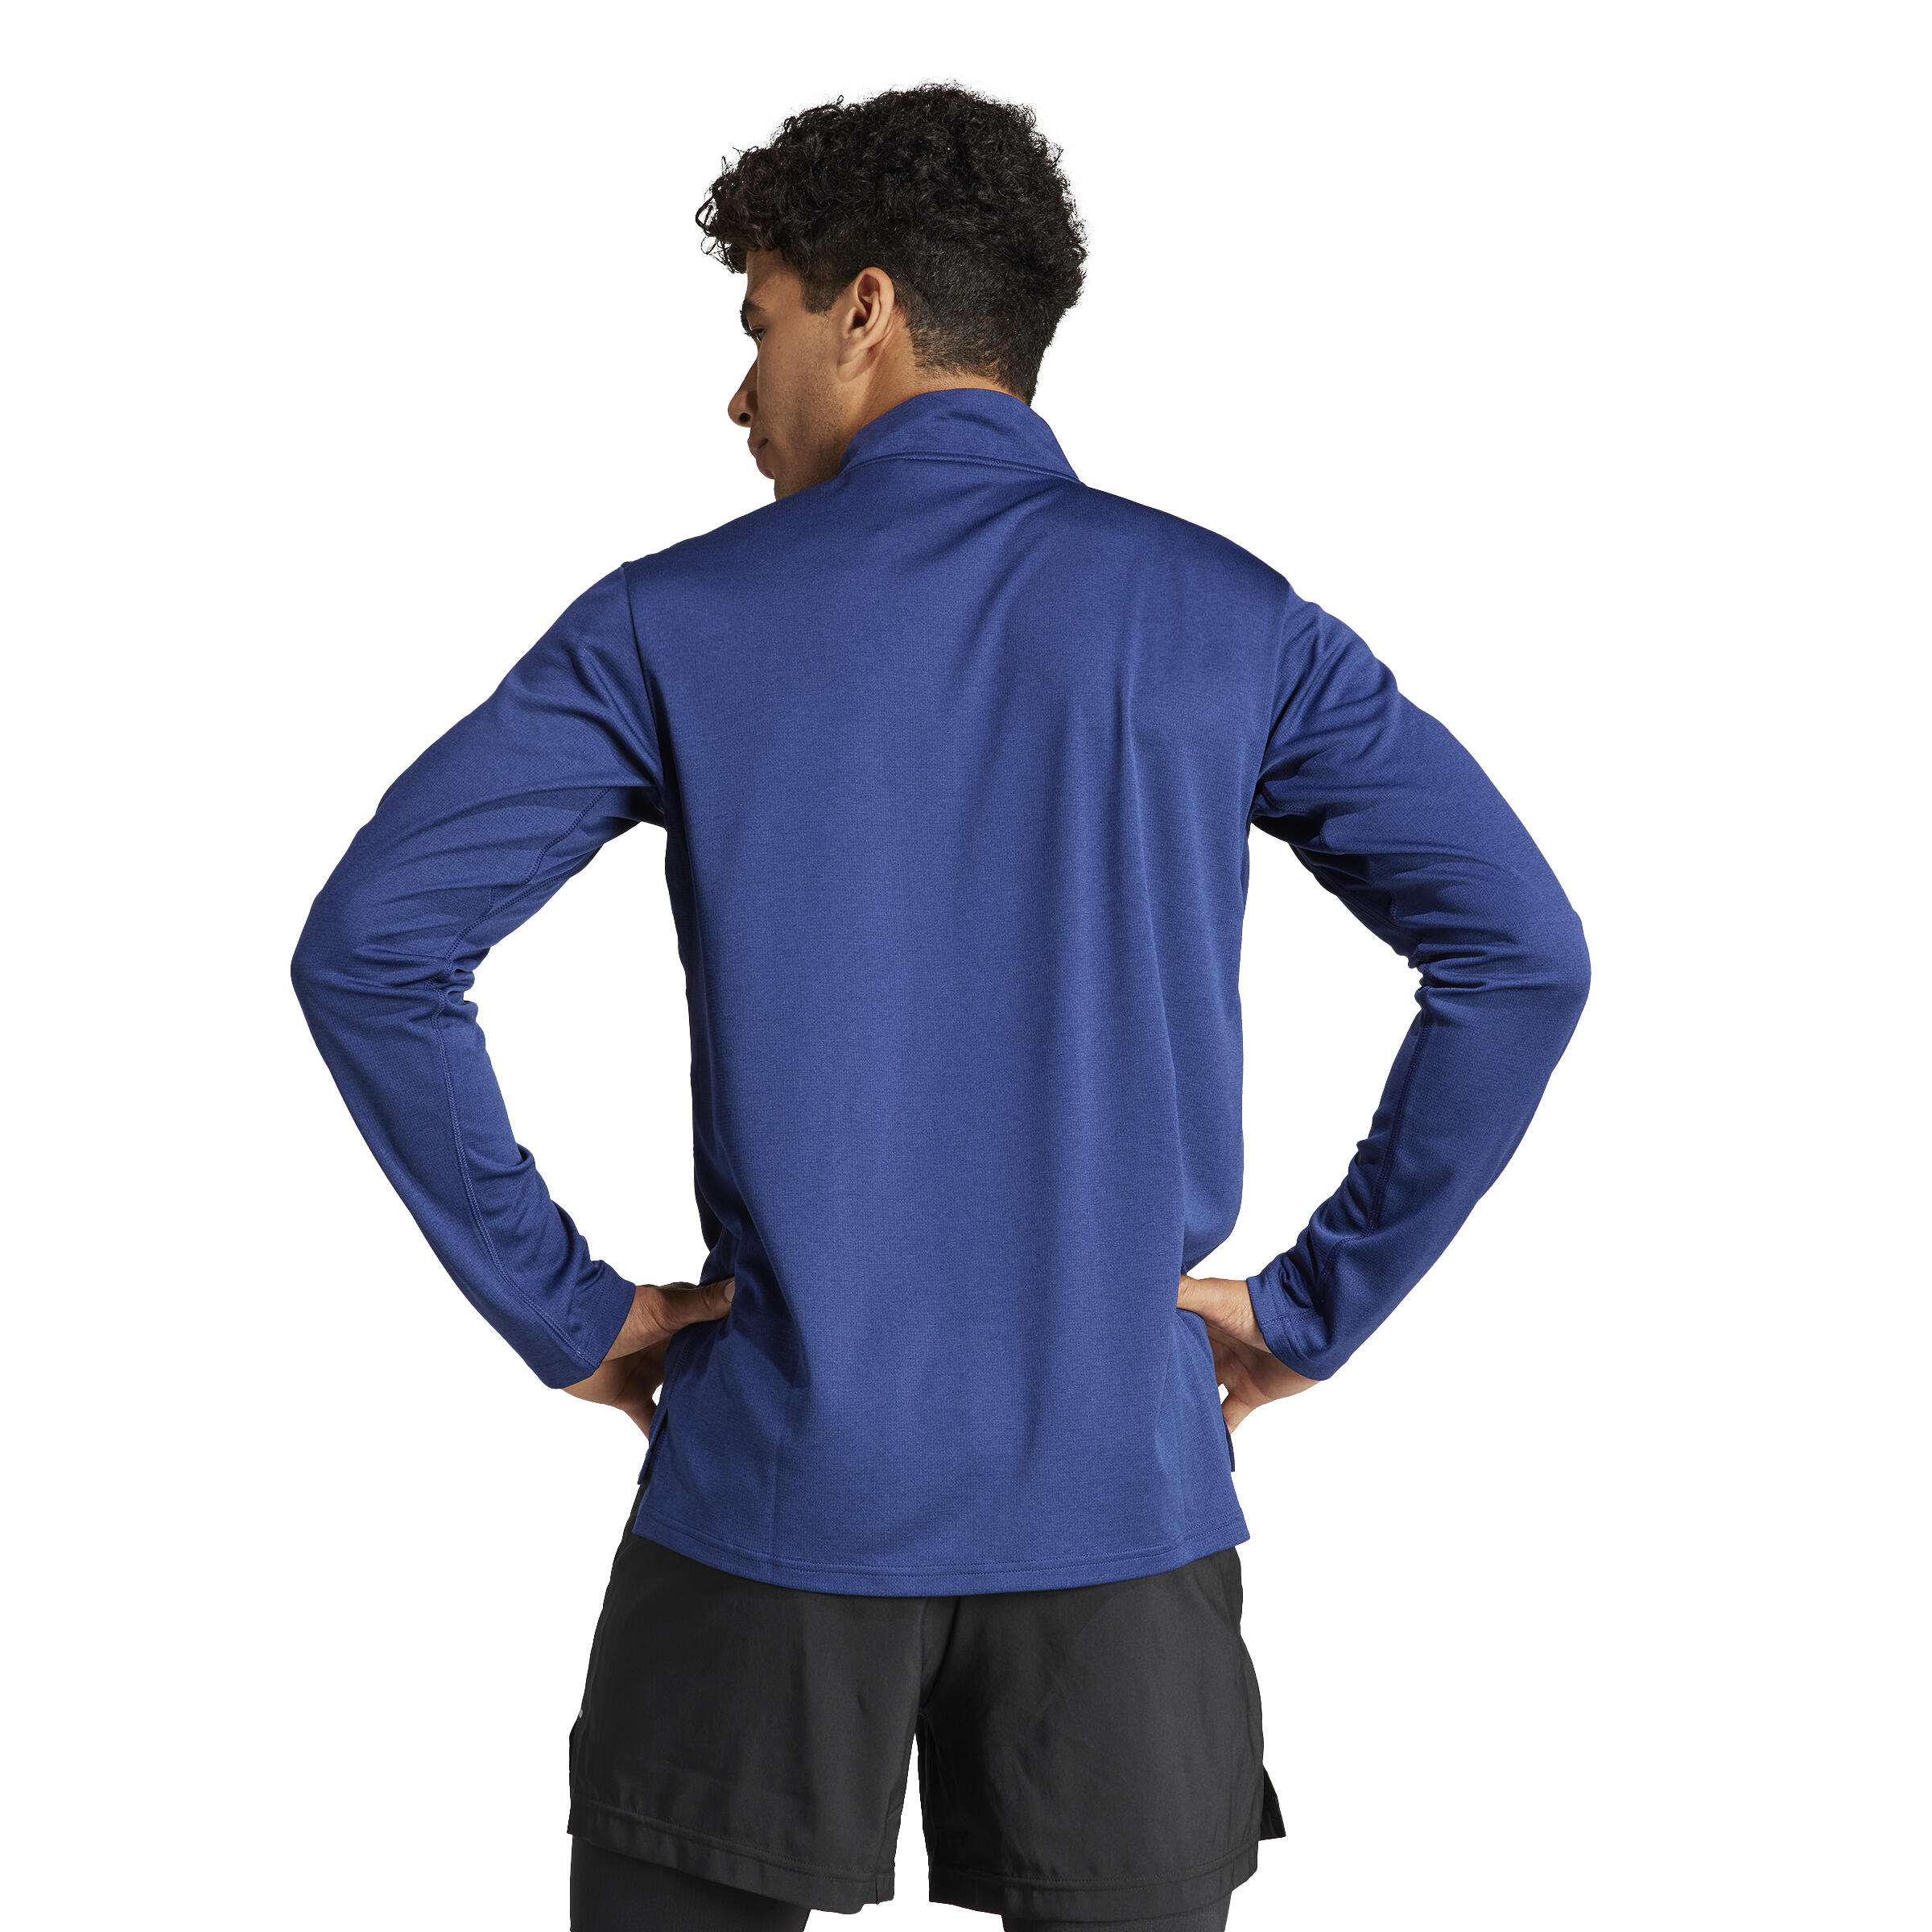 Mens Cardio Fitness Sweatshirt with Zip-Up Collar - Blue 3/7